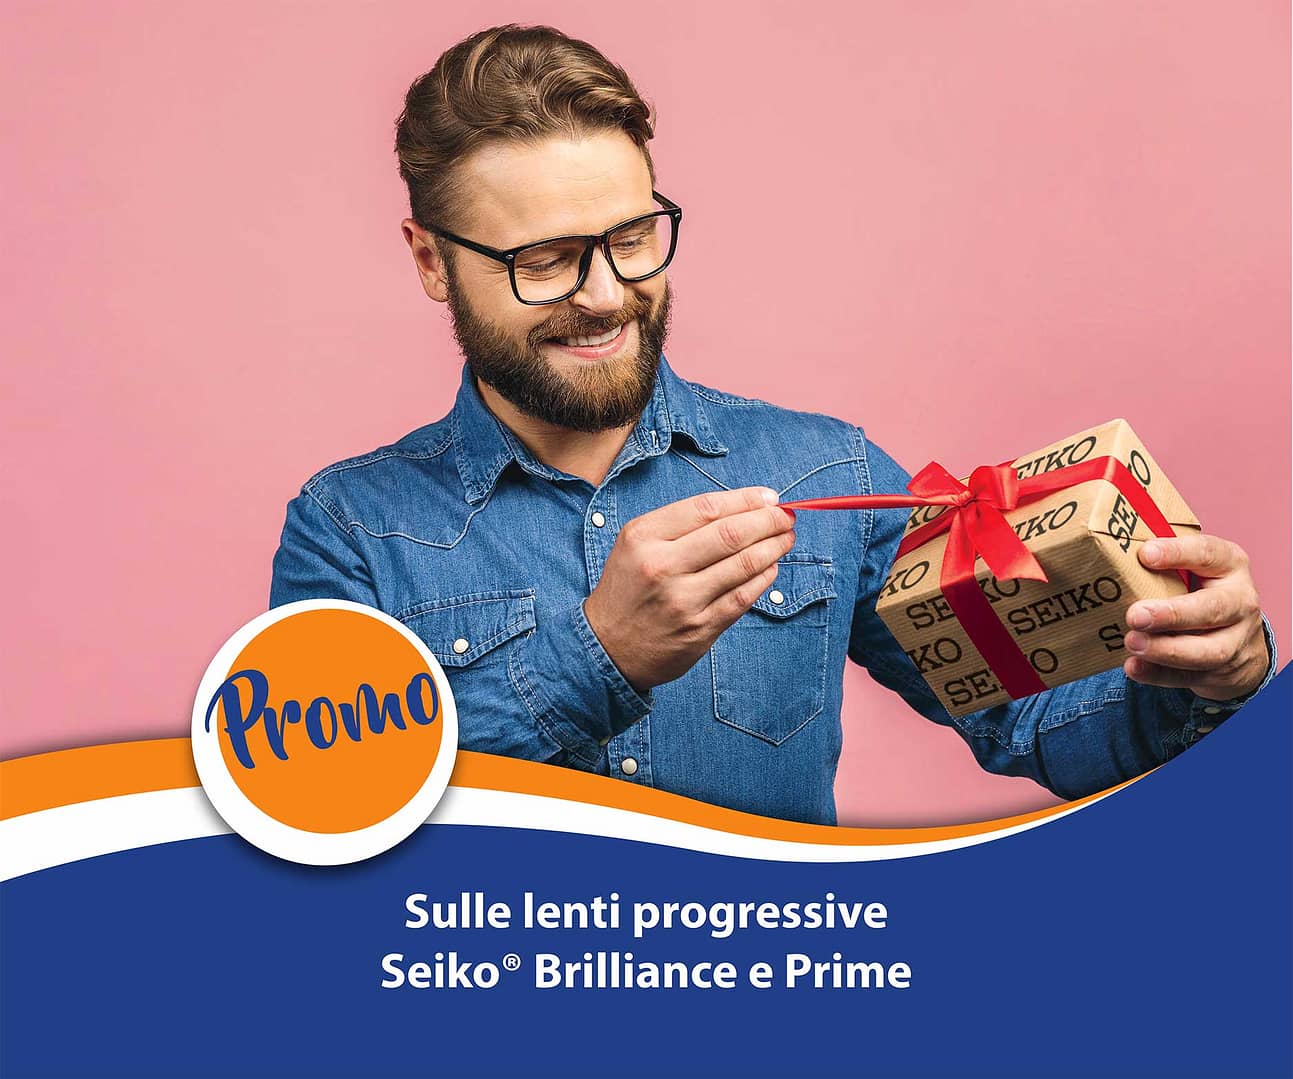 Promo 30% sulle lenti Seiko Brilliance e Prime